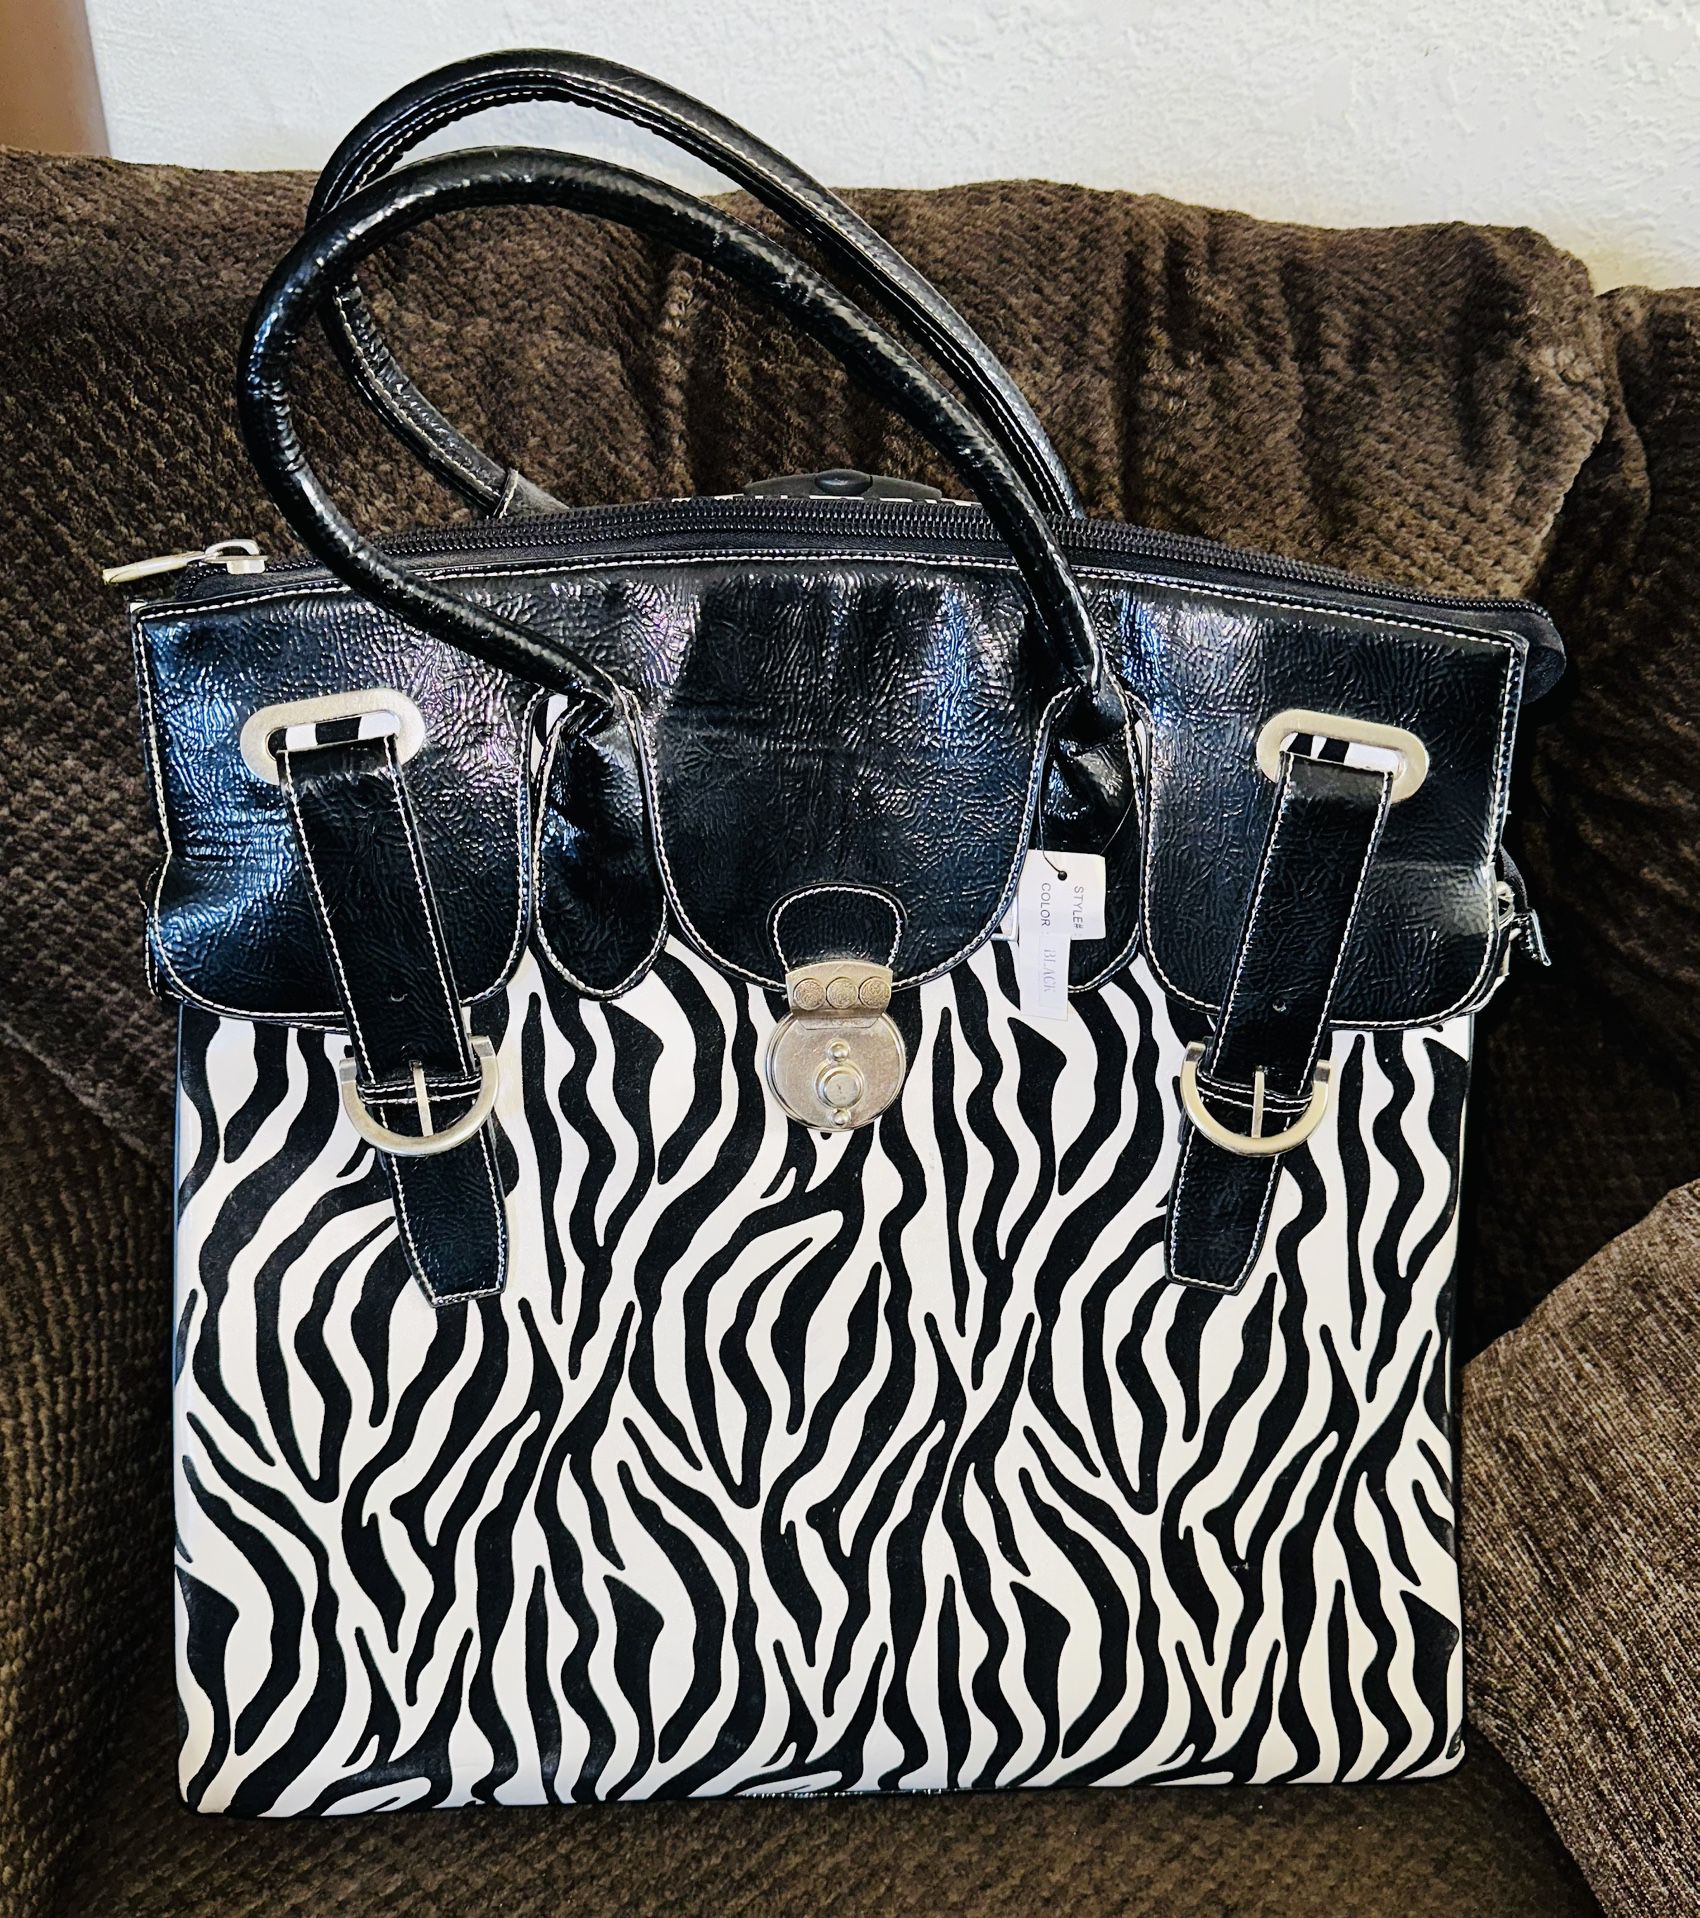 Zebra Print Rolling Laptop Bag - Brand New - OBO